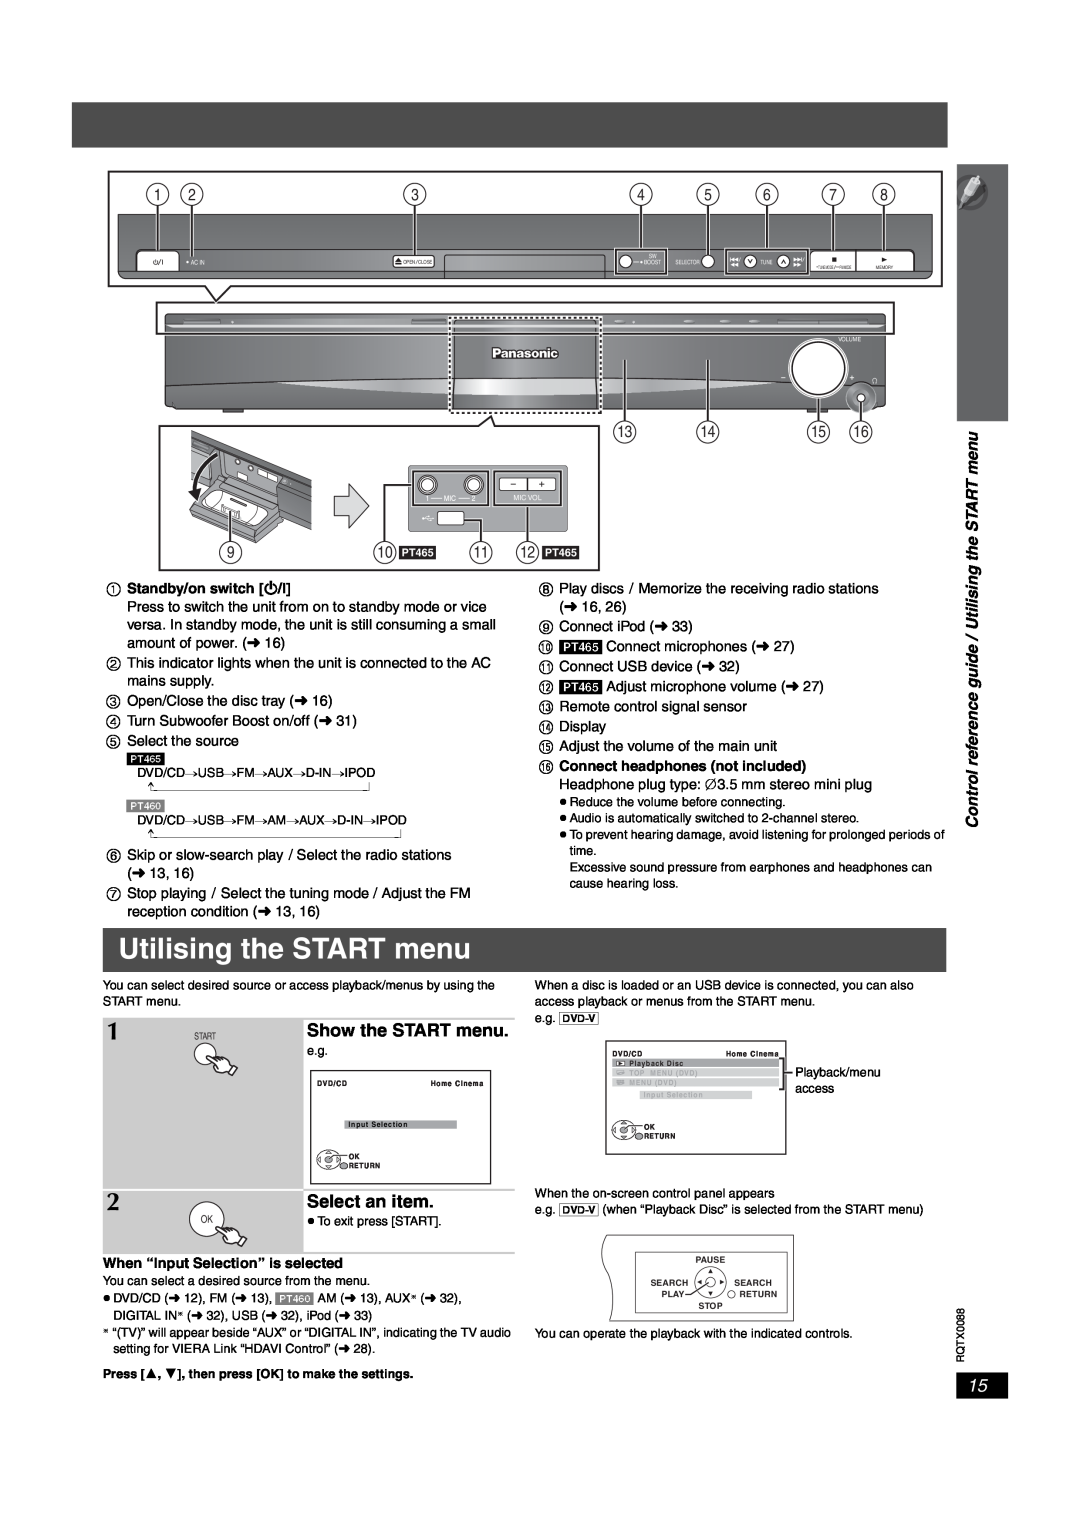 Panasonic SC-PT465, sc-pt460 manual Utilising the START menu, Select an item, Show the START menu 